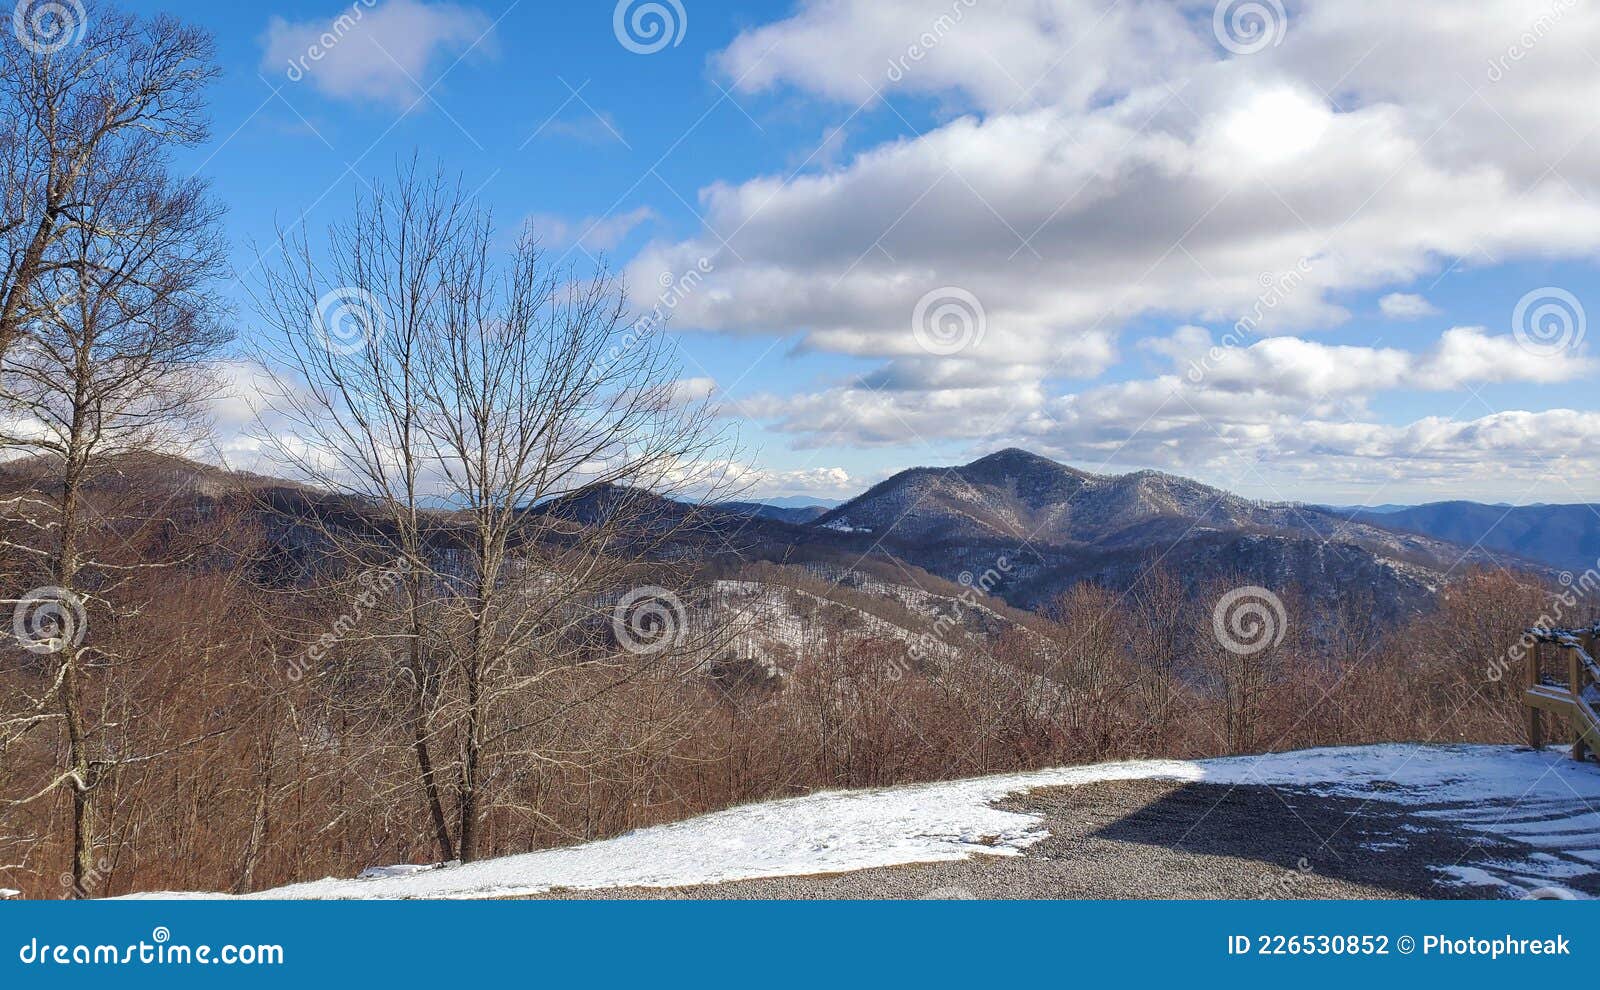 blue ridge mountians in winter